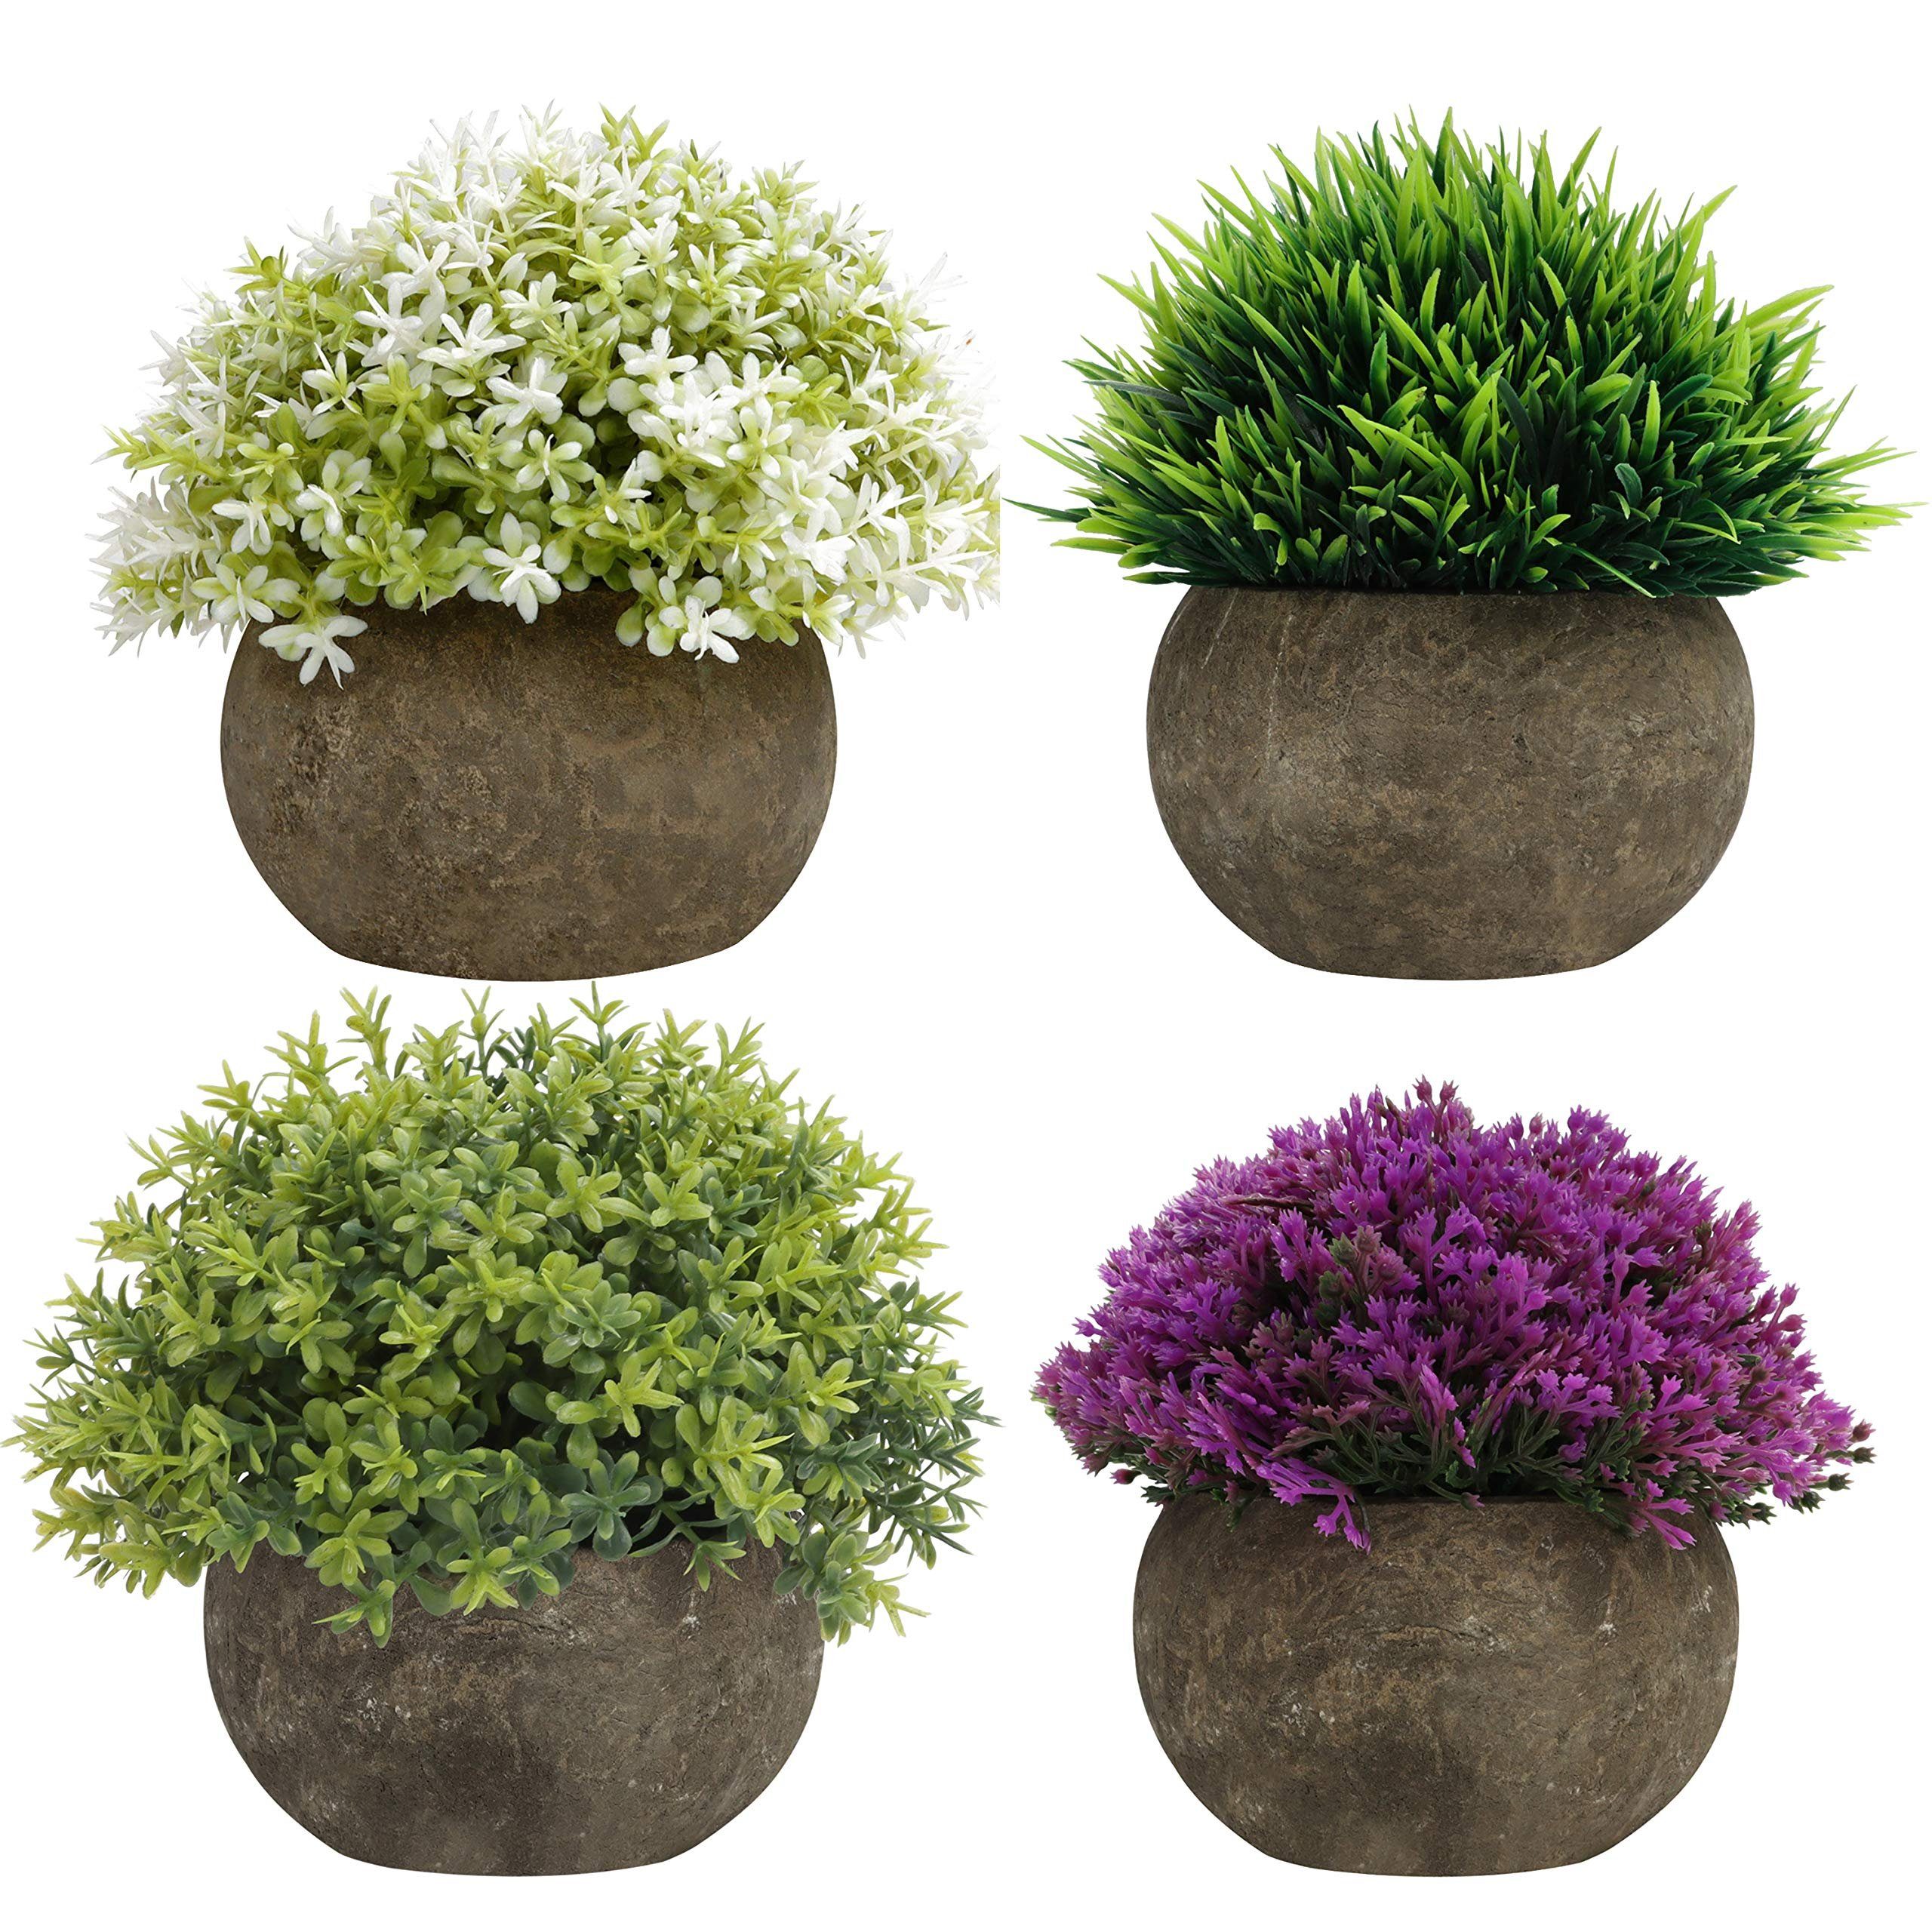 Belle Vous Dekoobjekt Künstliche Mini Pflanzen Set in Grün, Lila und Weiß - 4er Pack, Mini Grün Lila Weiß Kunstpflanzen Set 4er Pack